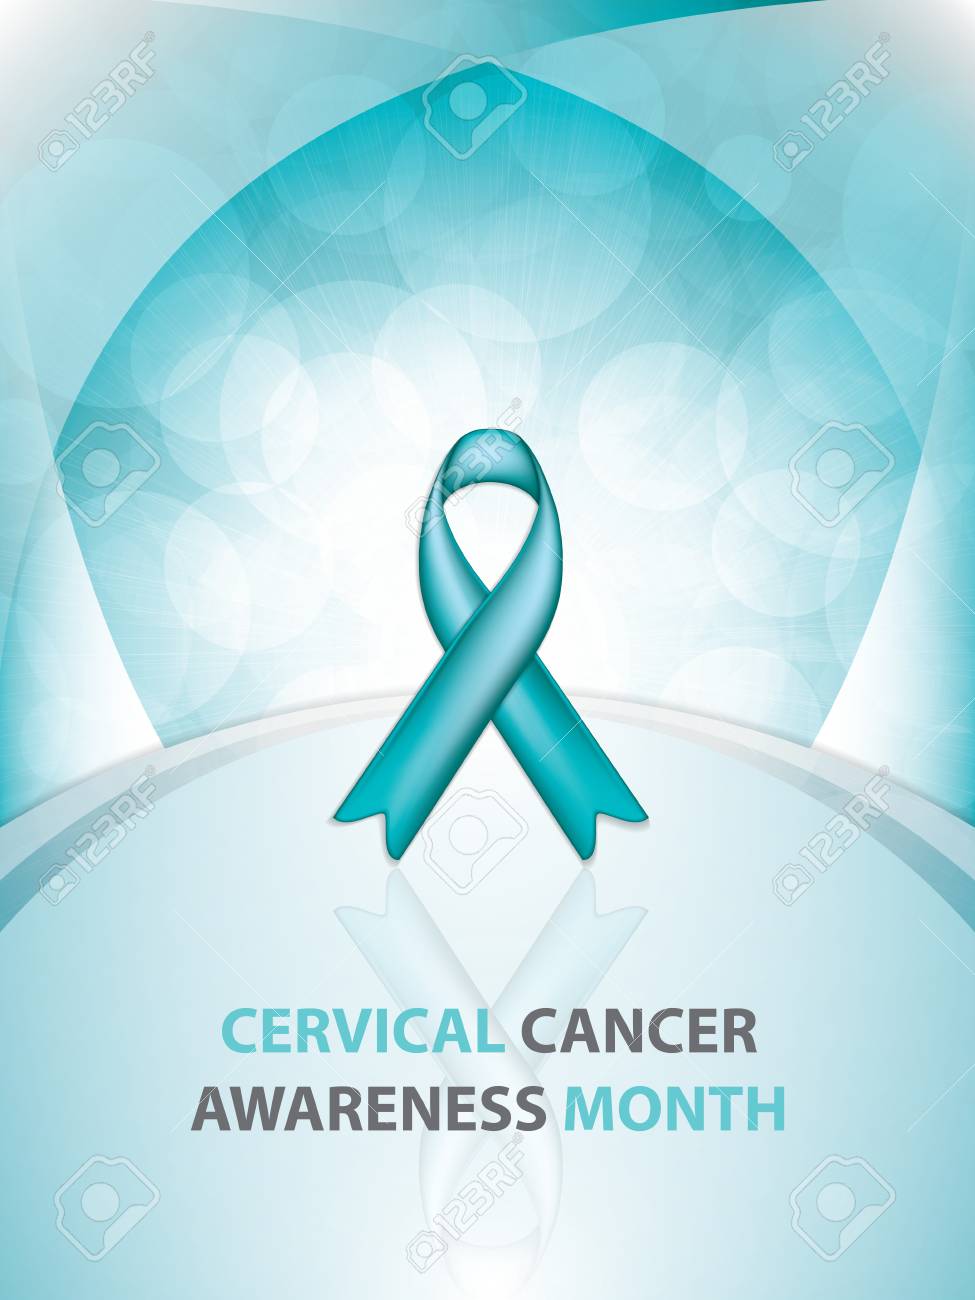 Cervical Cancer Awareness Month Ribbon Background Vector